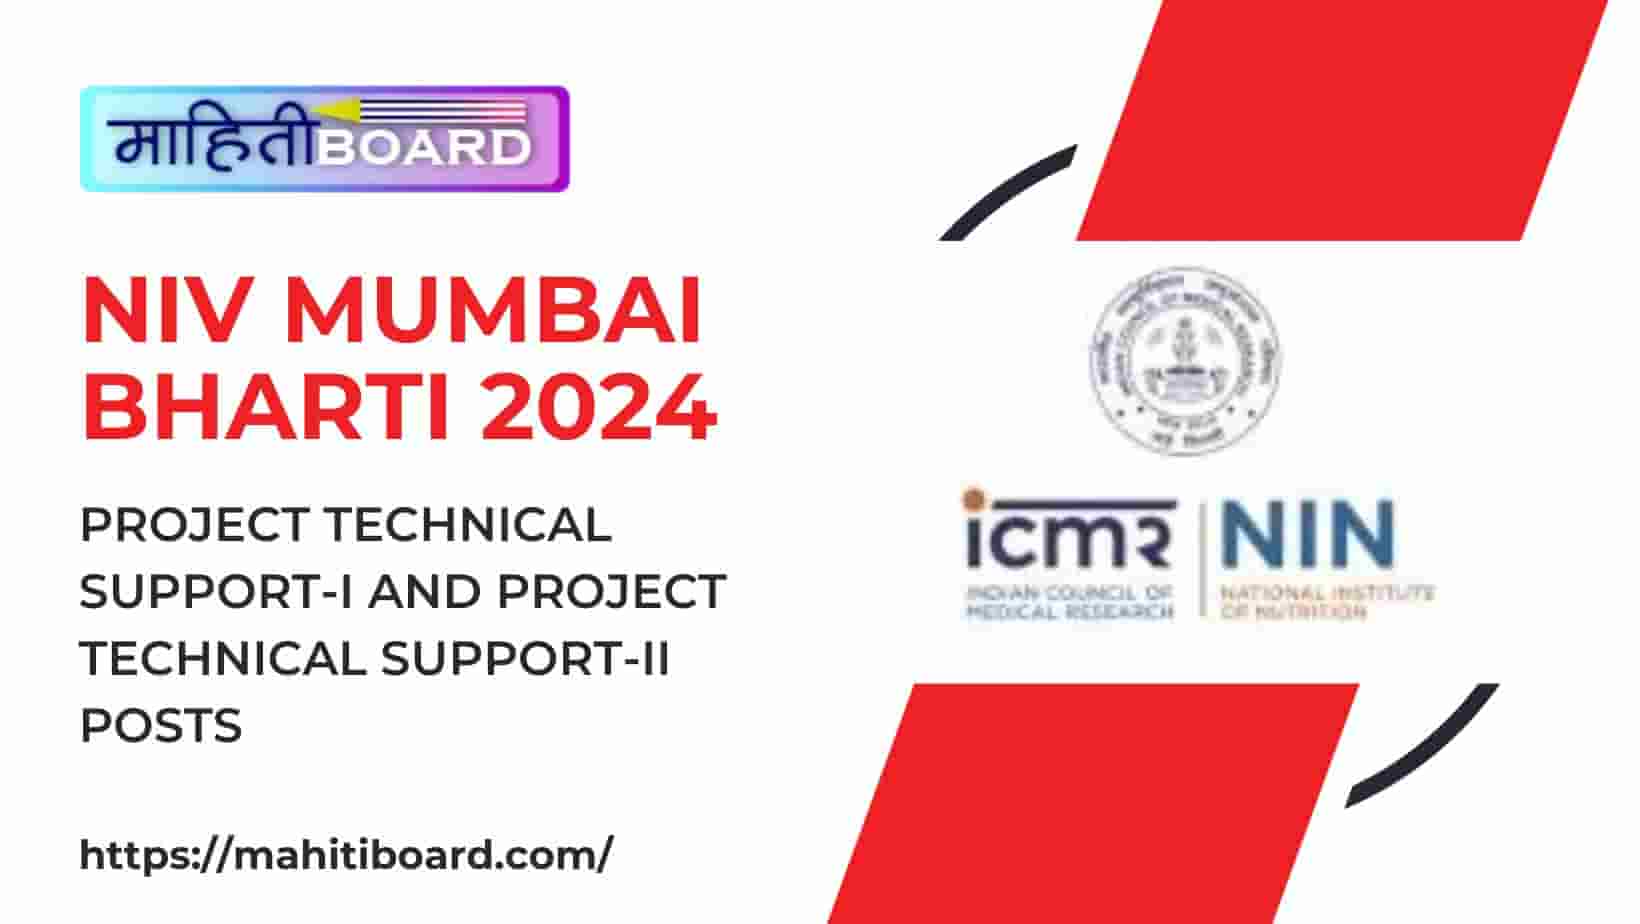 NIV Mumbai Bharti 2024